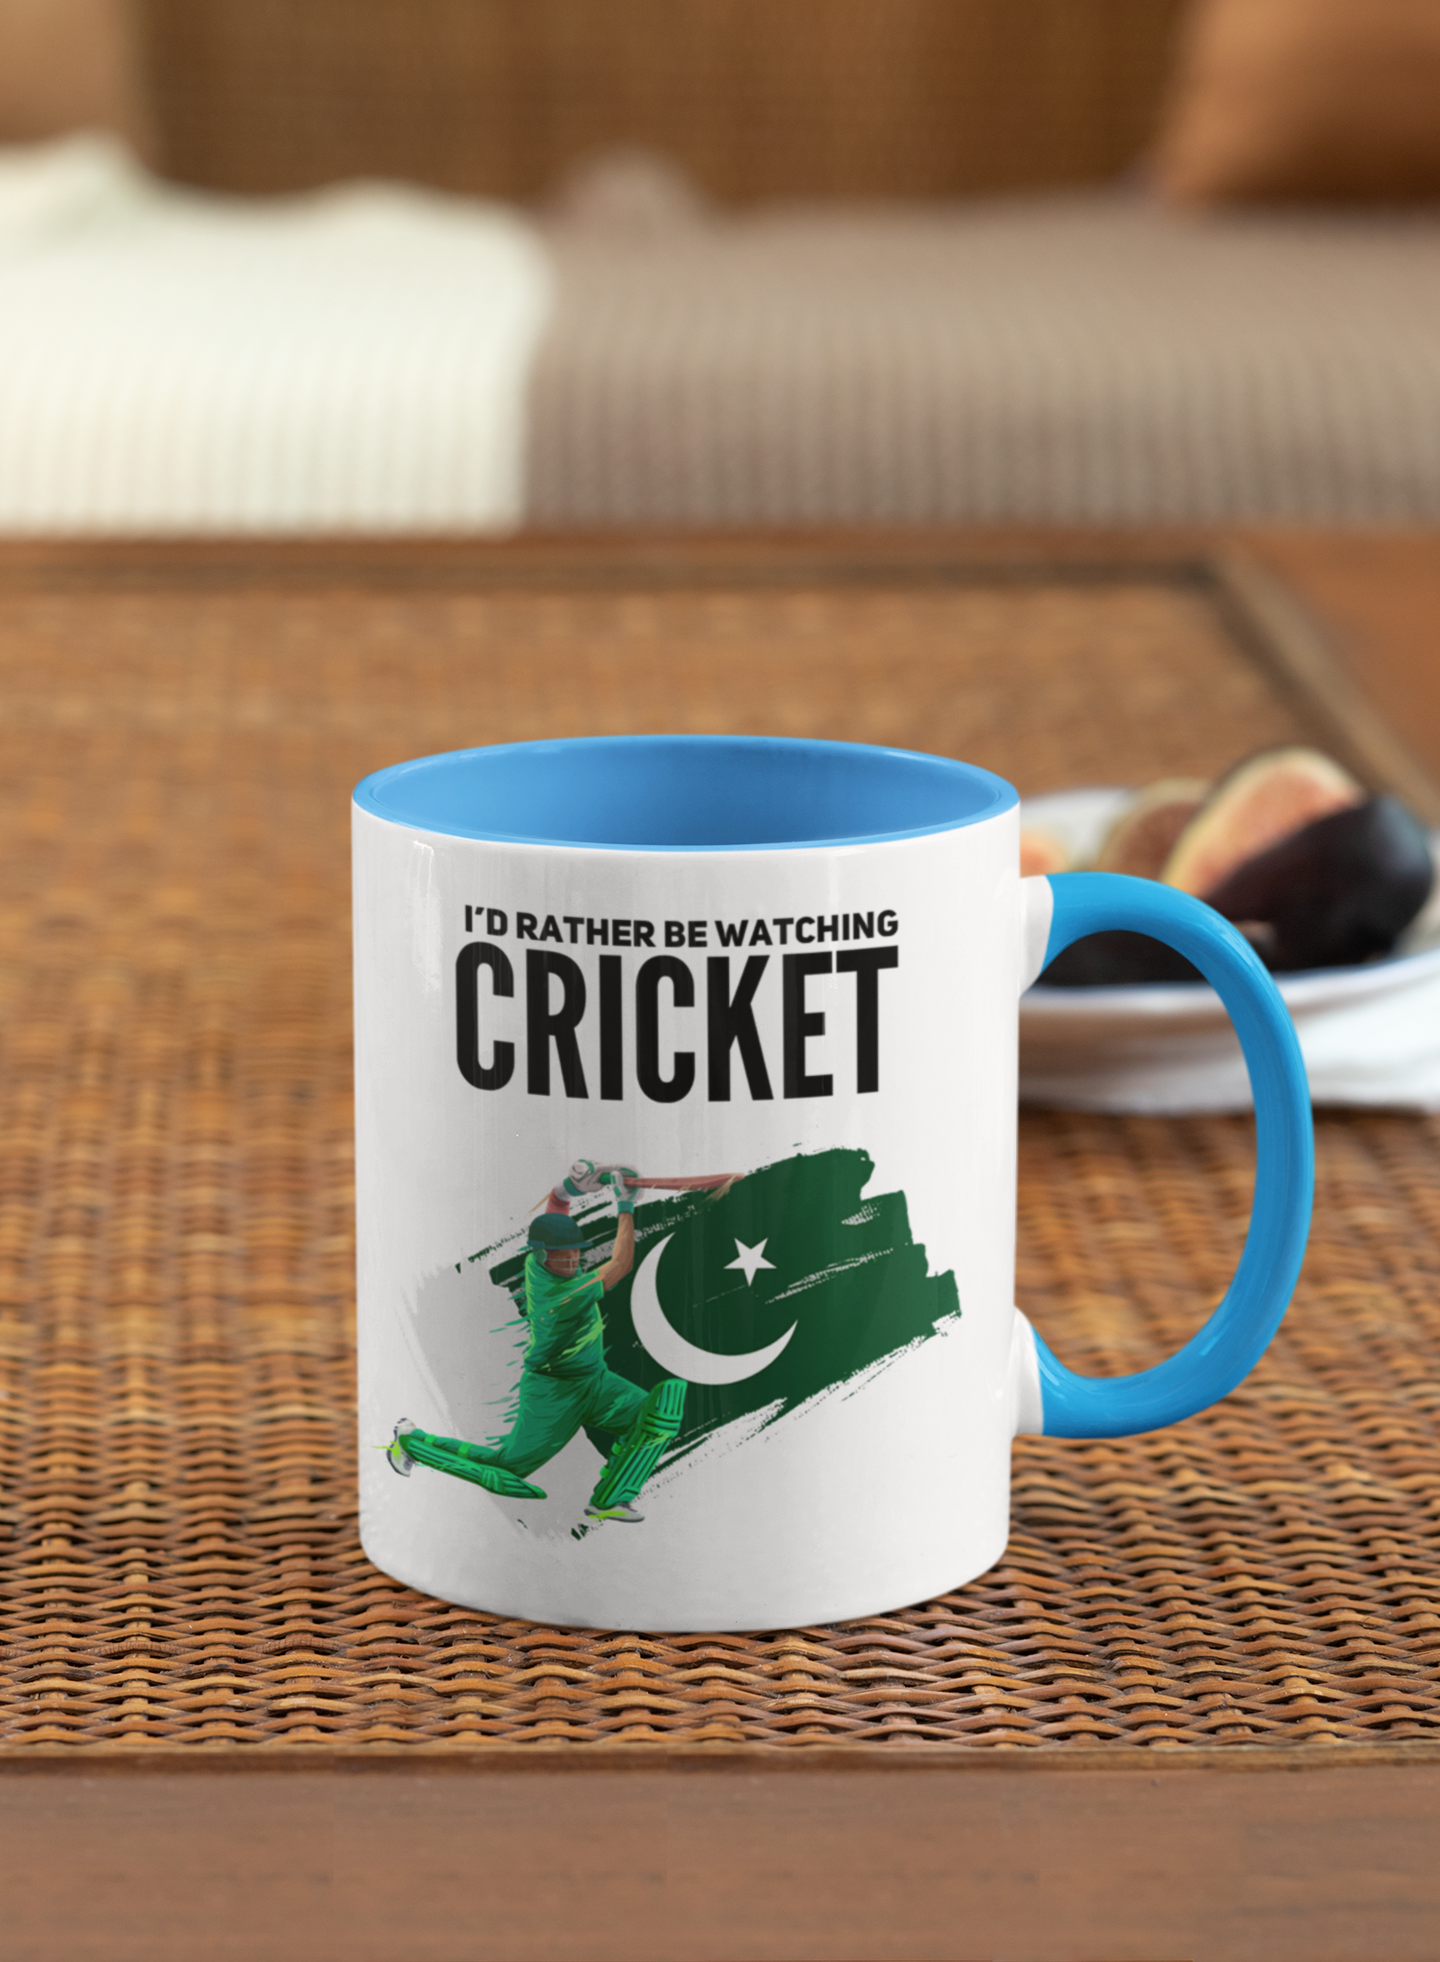 
                  
                    Watching Cricket Pakistan Mug
                  
                